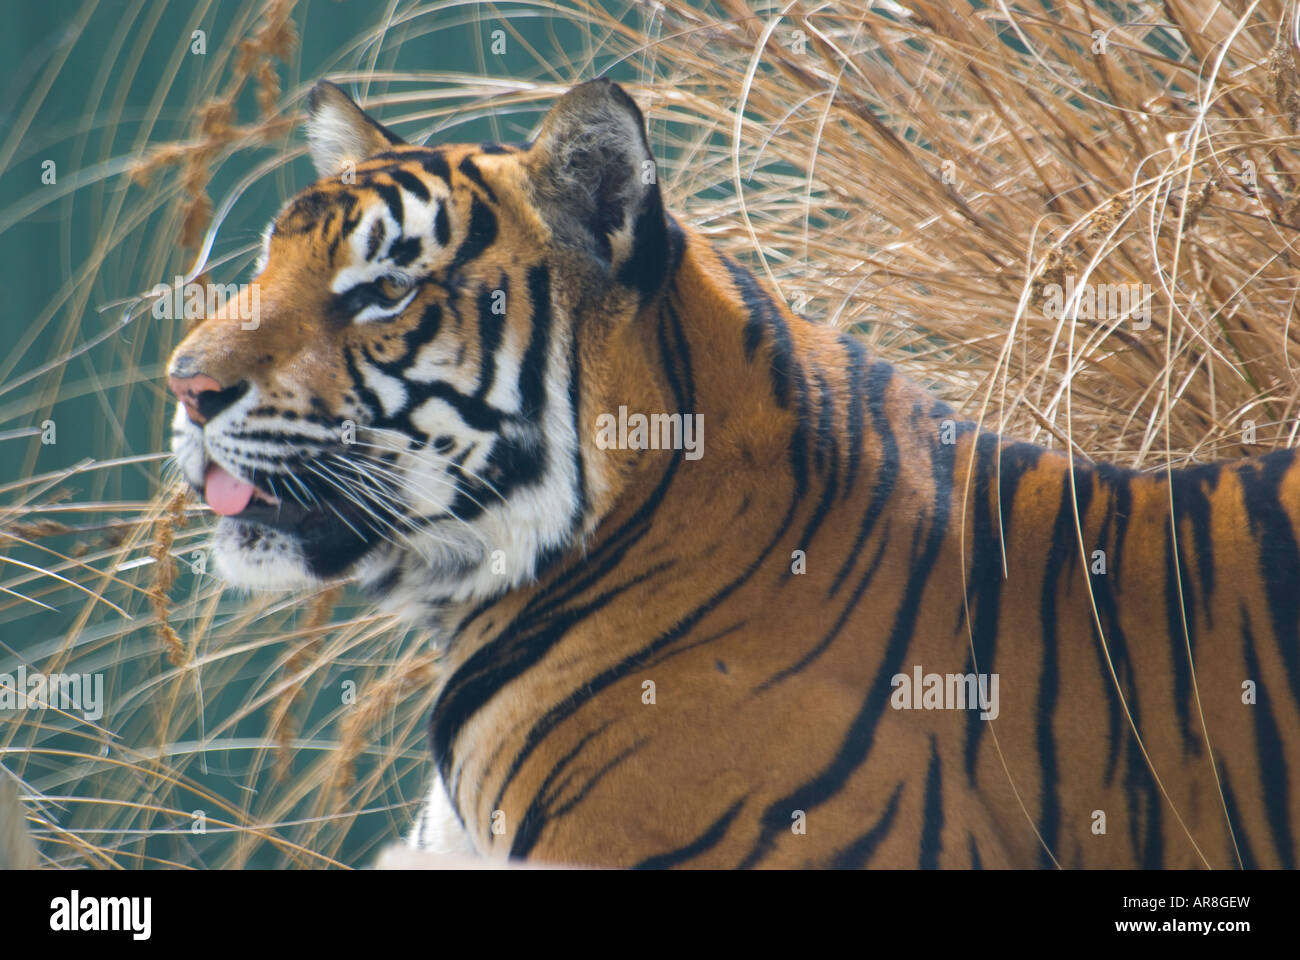 Tigre en cautiverio en un zoológico Foto de stock